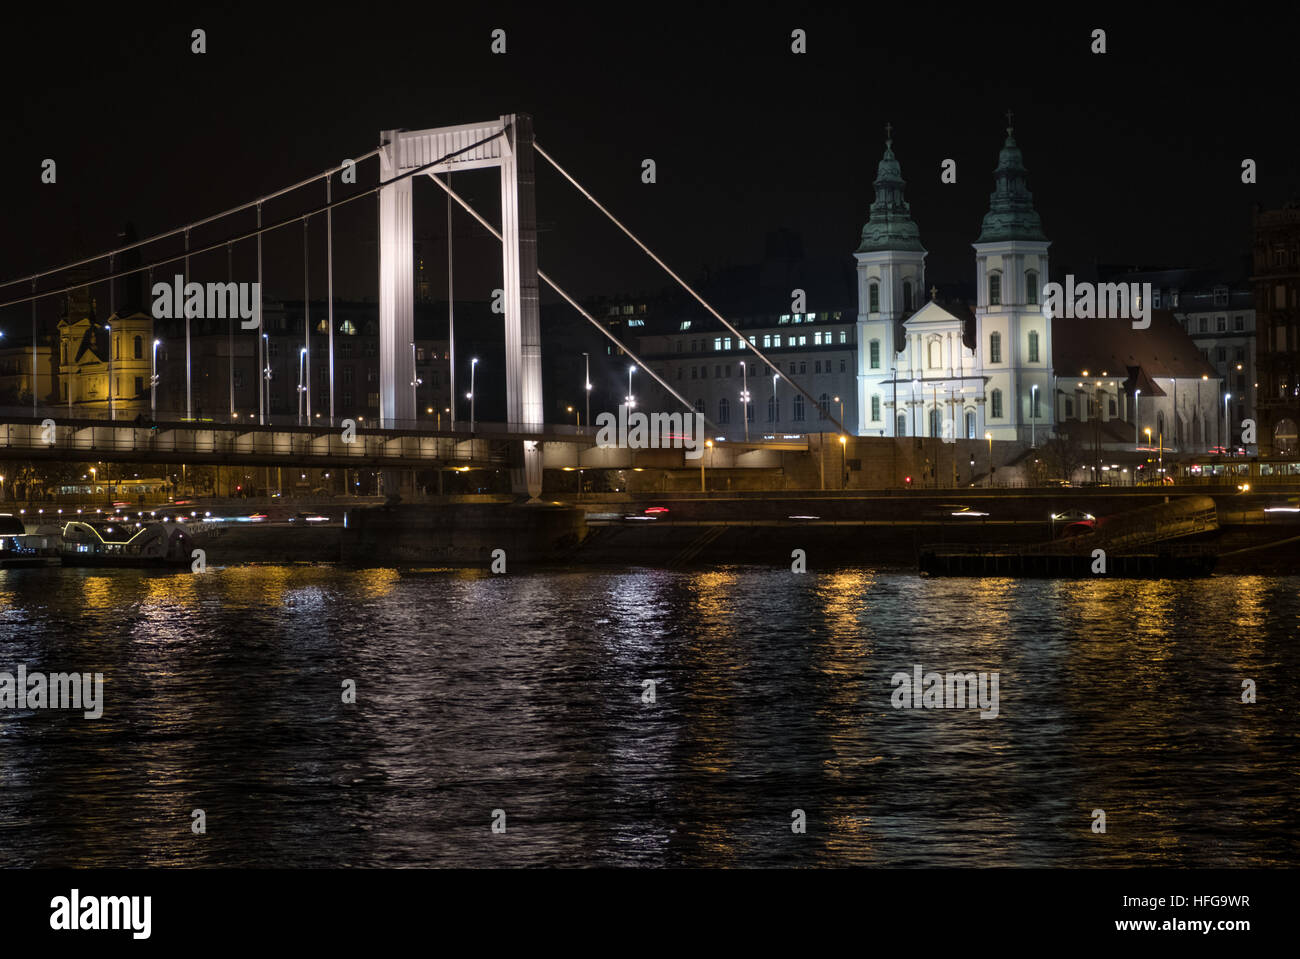 Nachtansicht der beleuchteten Elisabethbrücke, innerstädtische Pfarrkirche und Donau, von der Buda-BankBudapest, Ungarn Stockfoto